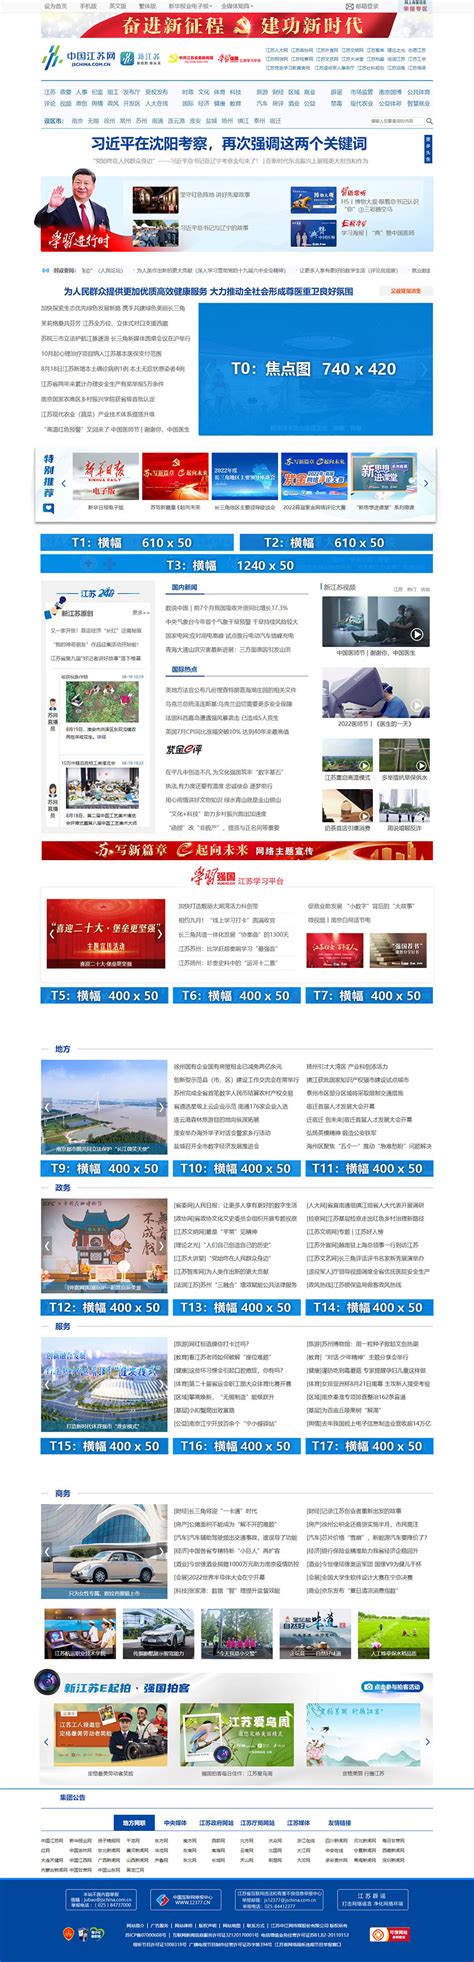 江苏广播新媒体-互联网网络平台广告-官微公众号广告